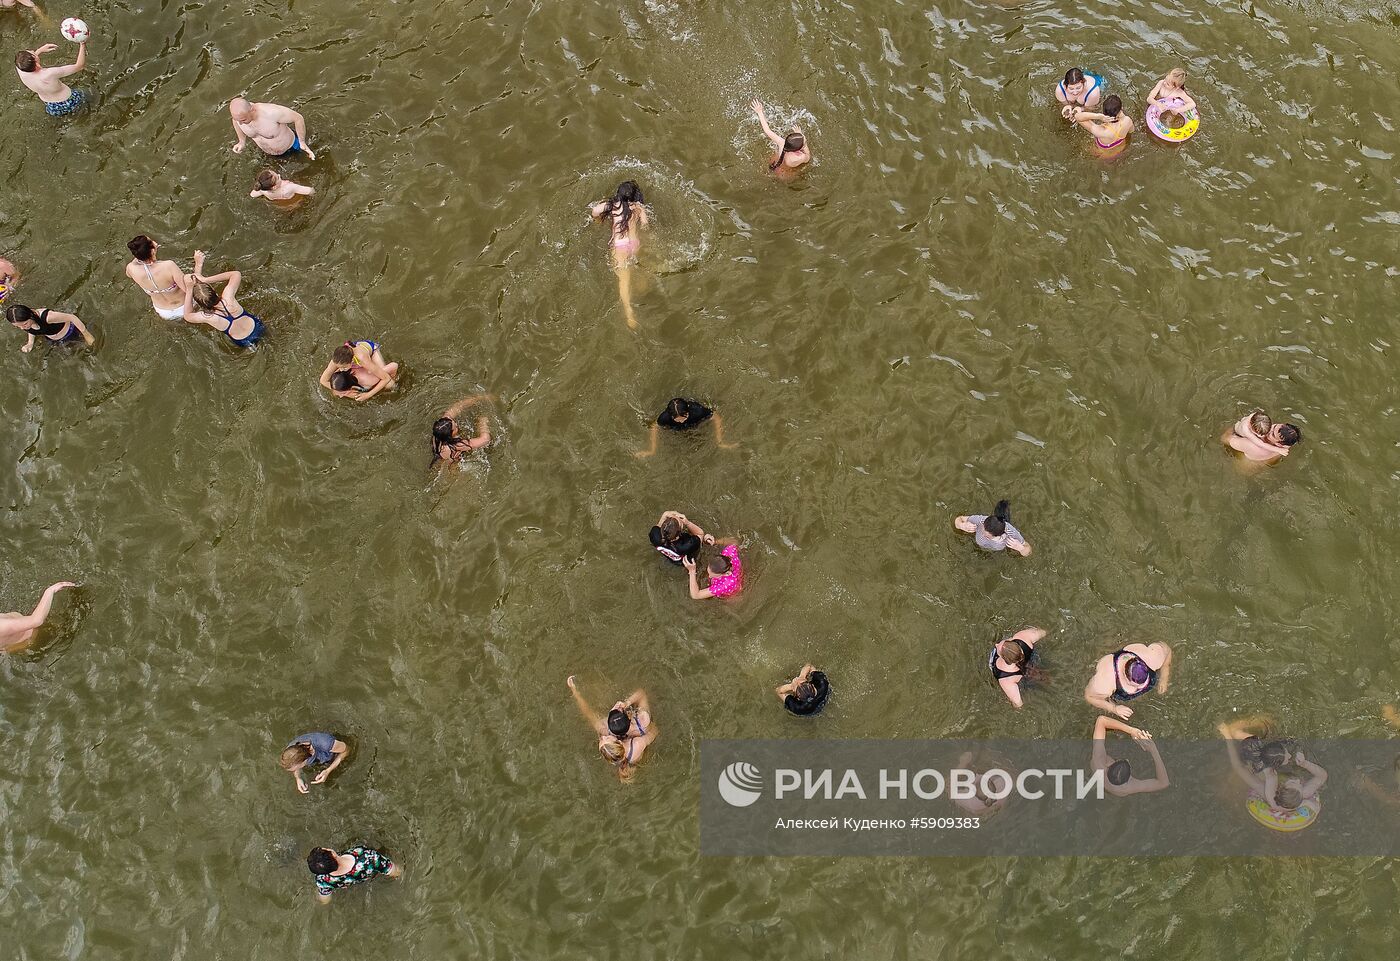 Пляжный отдых в Москве